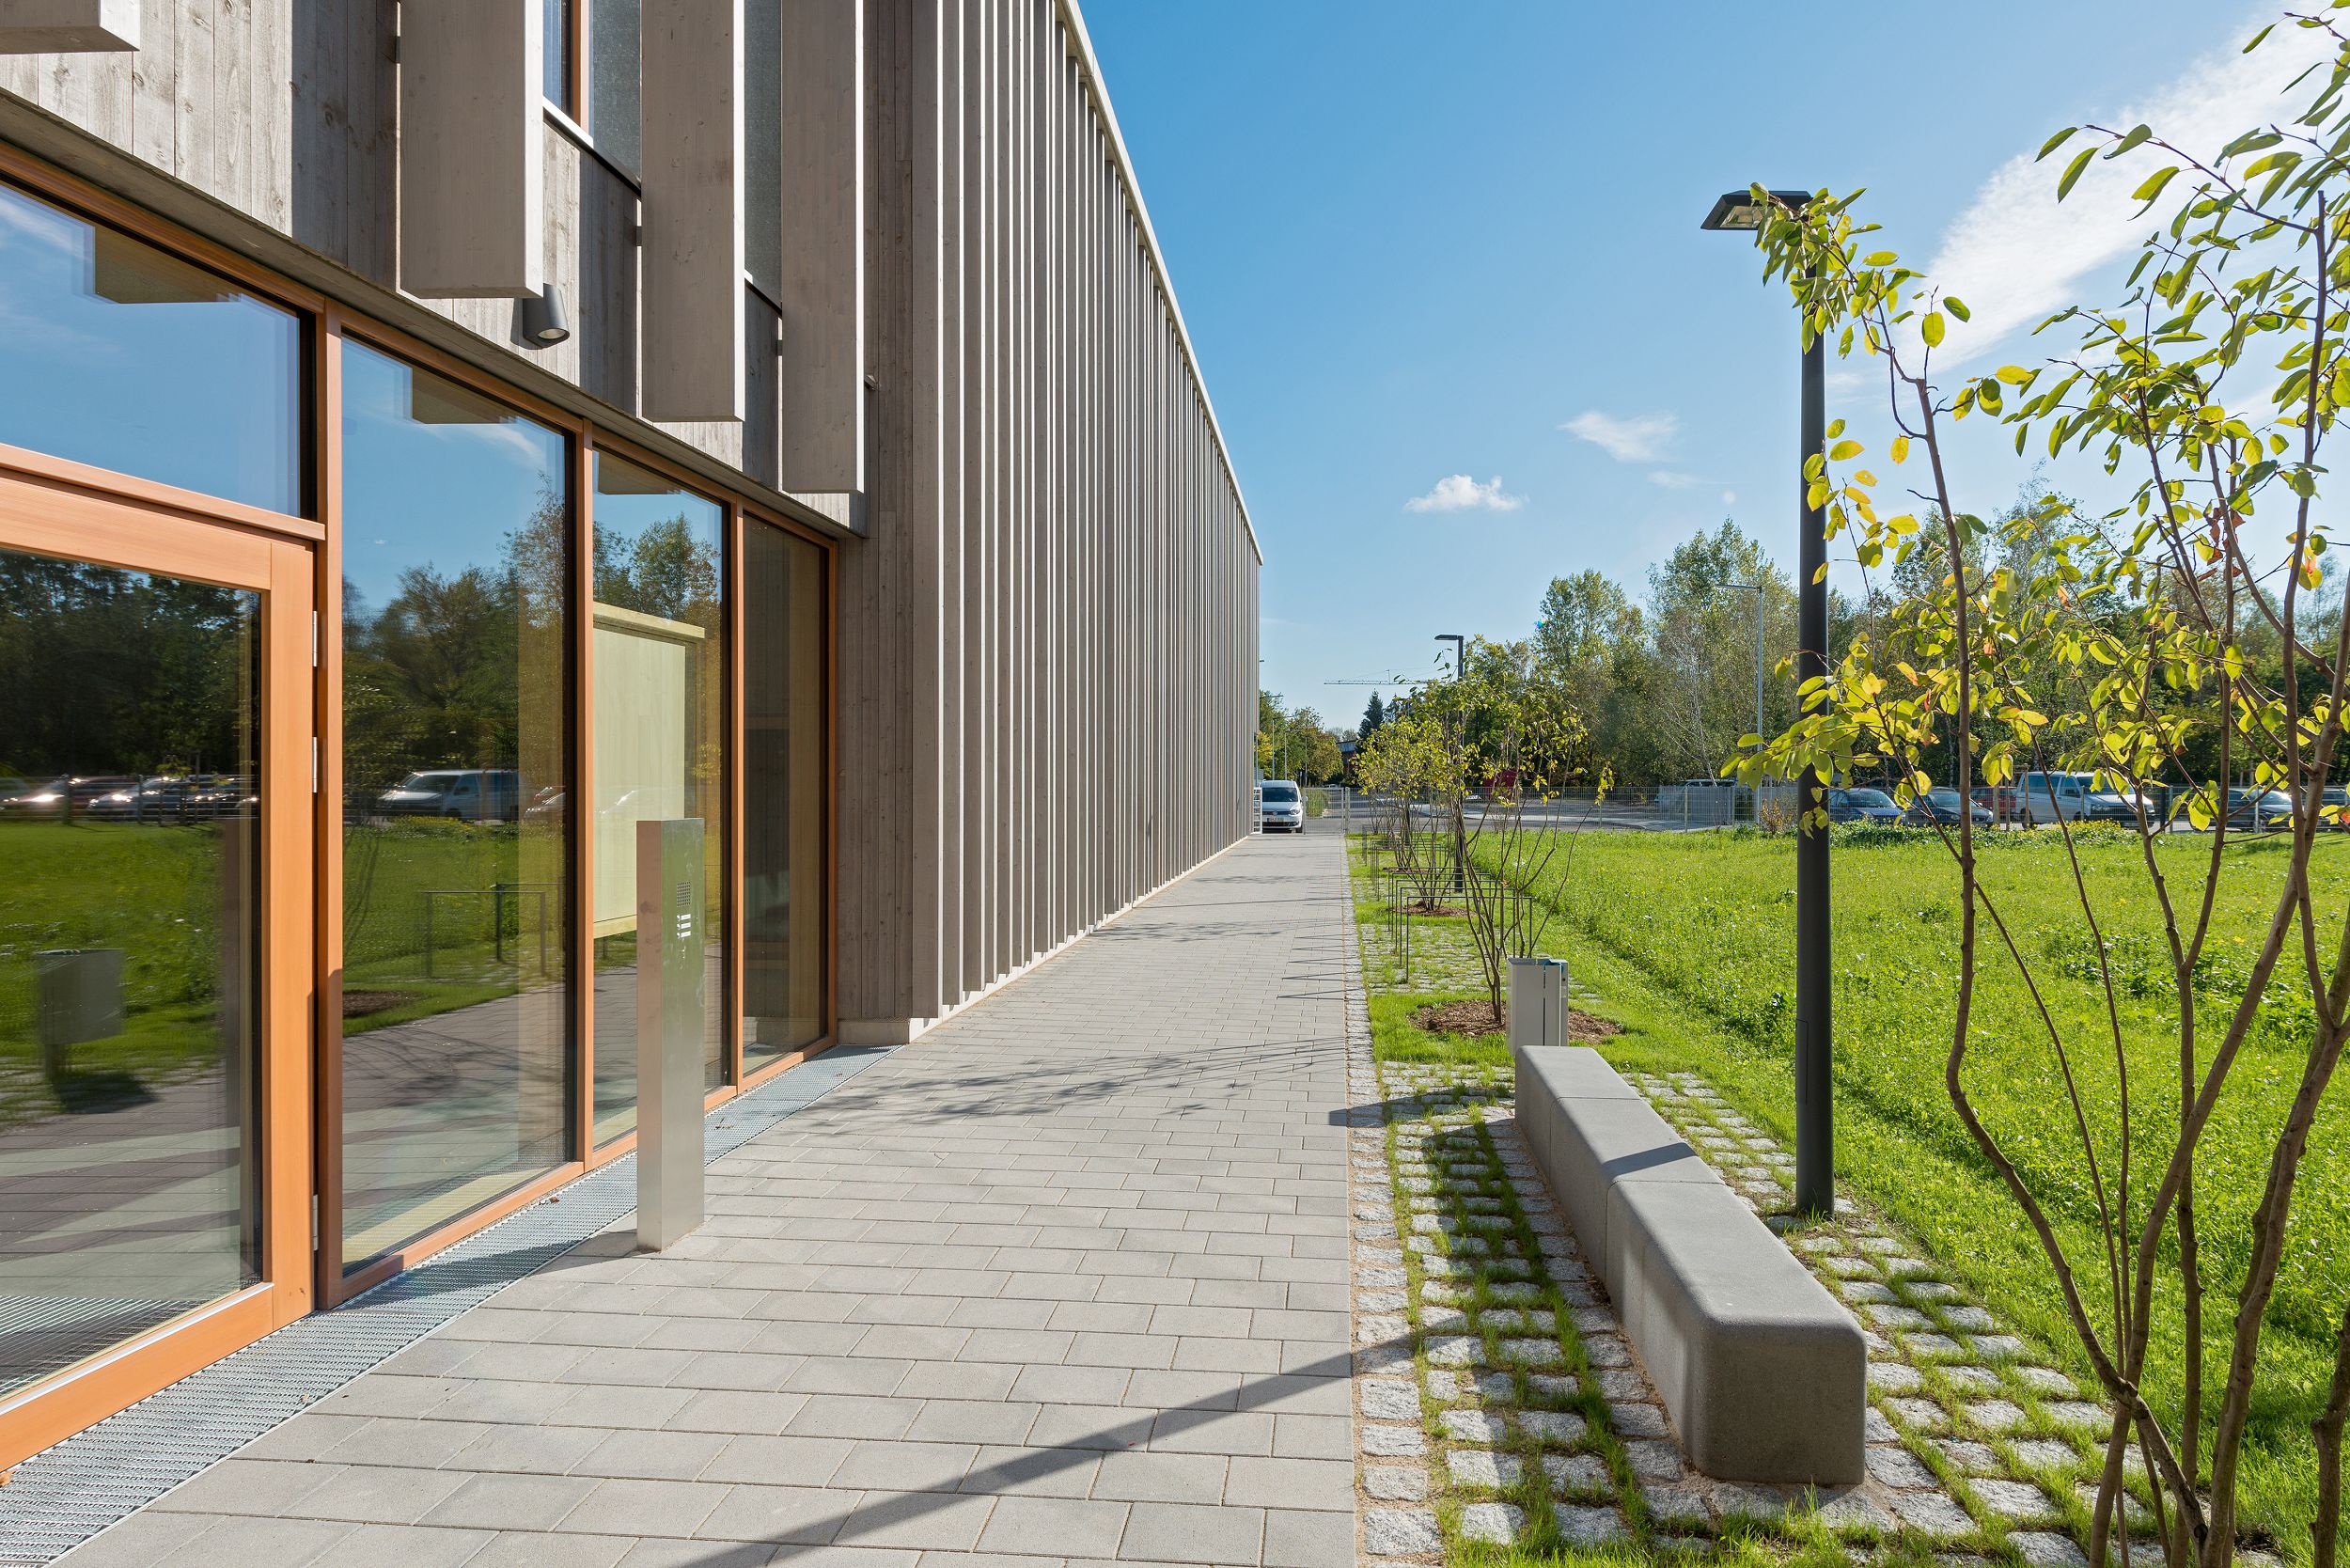 Bild: Außenanlagen der neuen Grundschule, Foto: Johann Hinrichs Photography